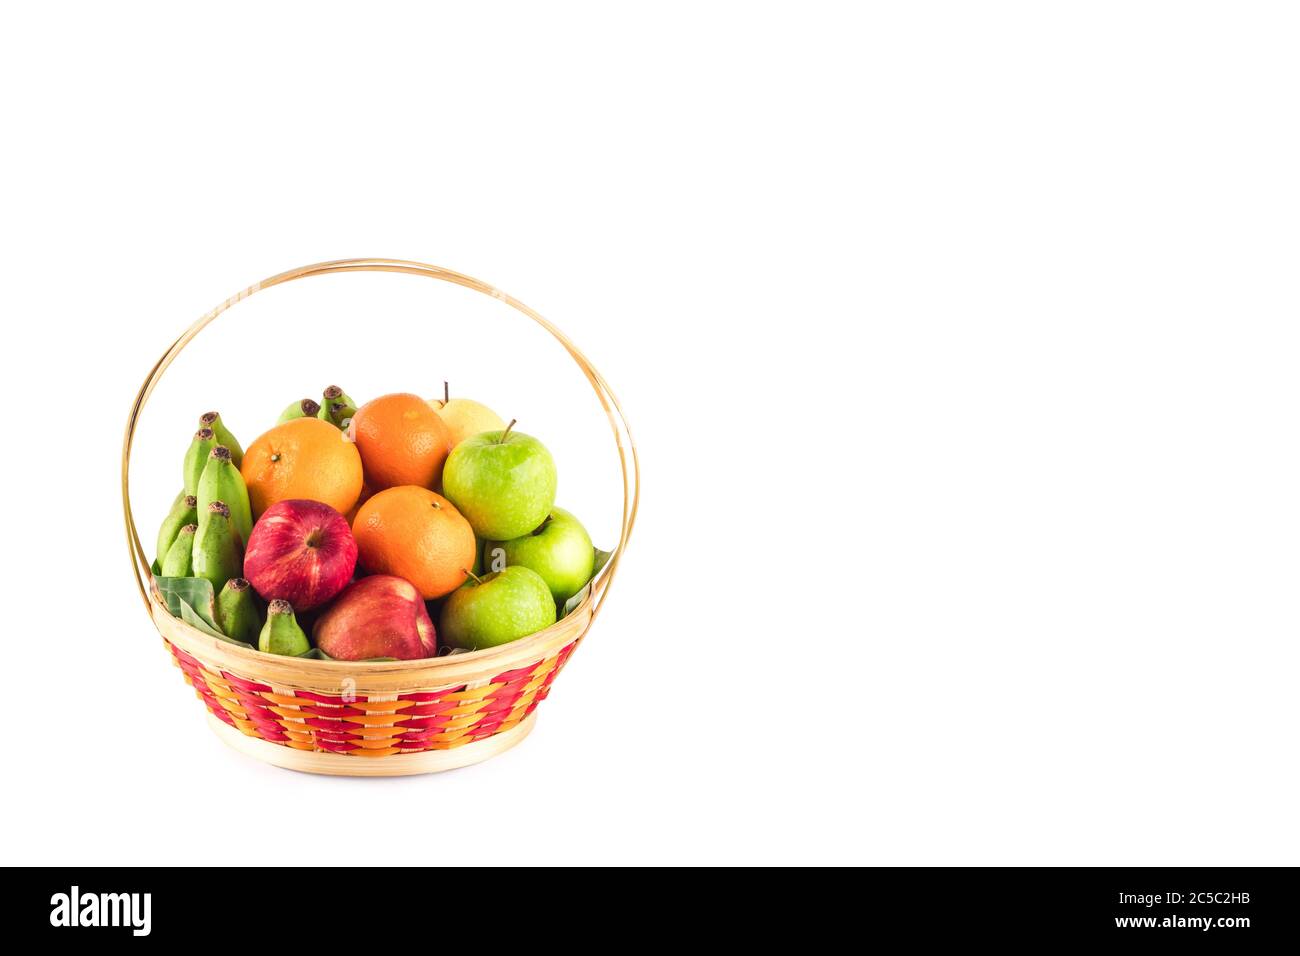 Orange, poire chinoise, banane, pomme rouge et pomme verte dans un panier en osier sur fond blanc fruits santé nourriture isolée Banque D'Images